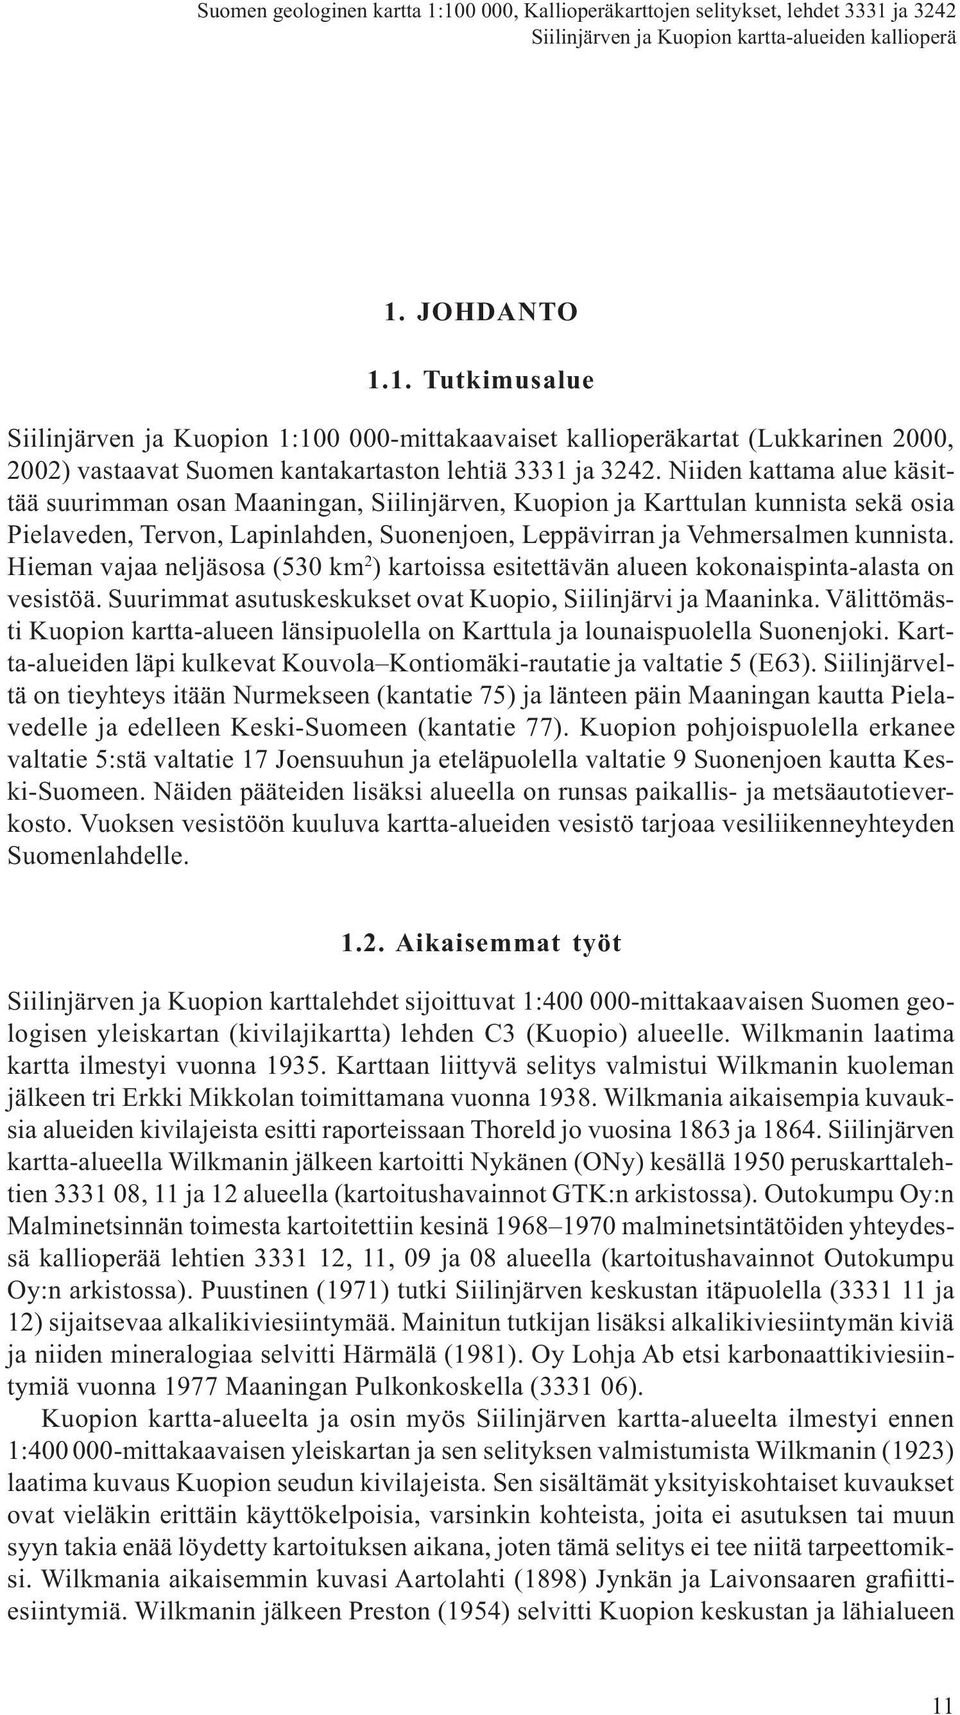 Niiden kattama alue käsittää suurimman osan Maaningan, Siilinjärven, Kuopion ja Karttulan kunnista sekä osia Pielaveden, Tervon, Lapinlahden, Suonenjoen, Leppävirran ja Vehmersalmen kunnista.